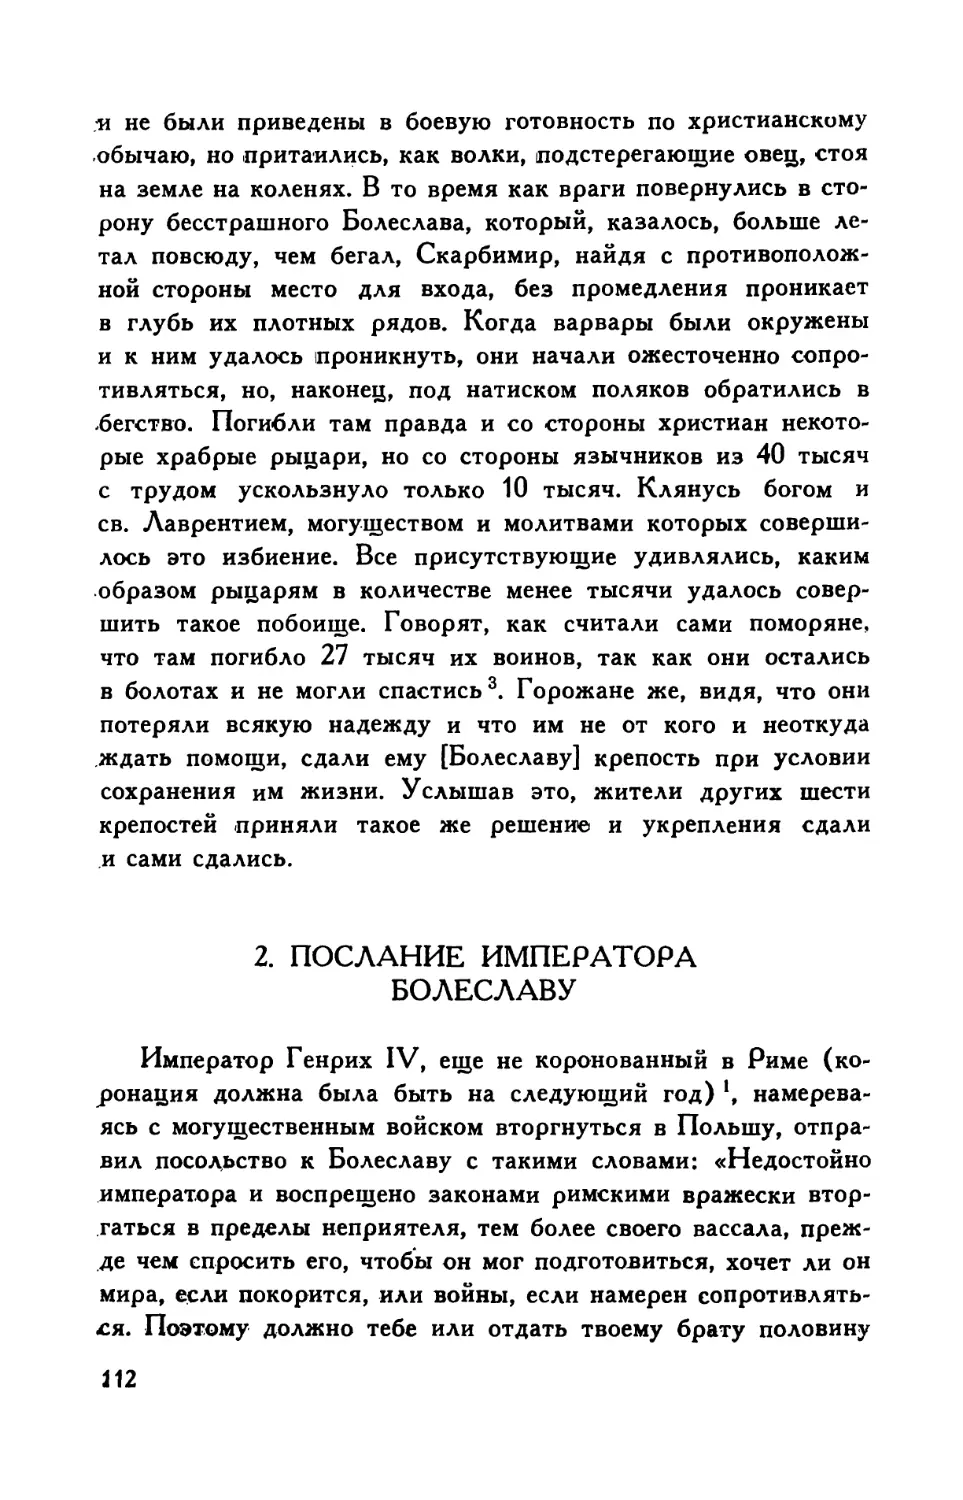 2. Послание императора Болеславу